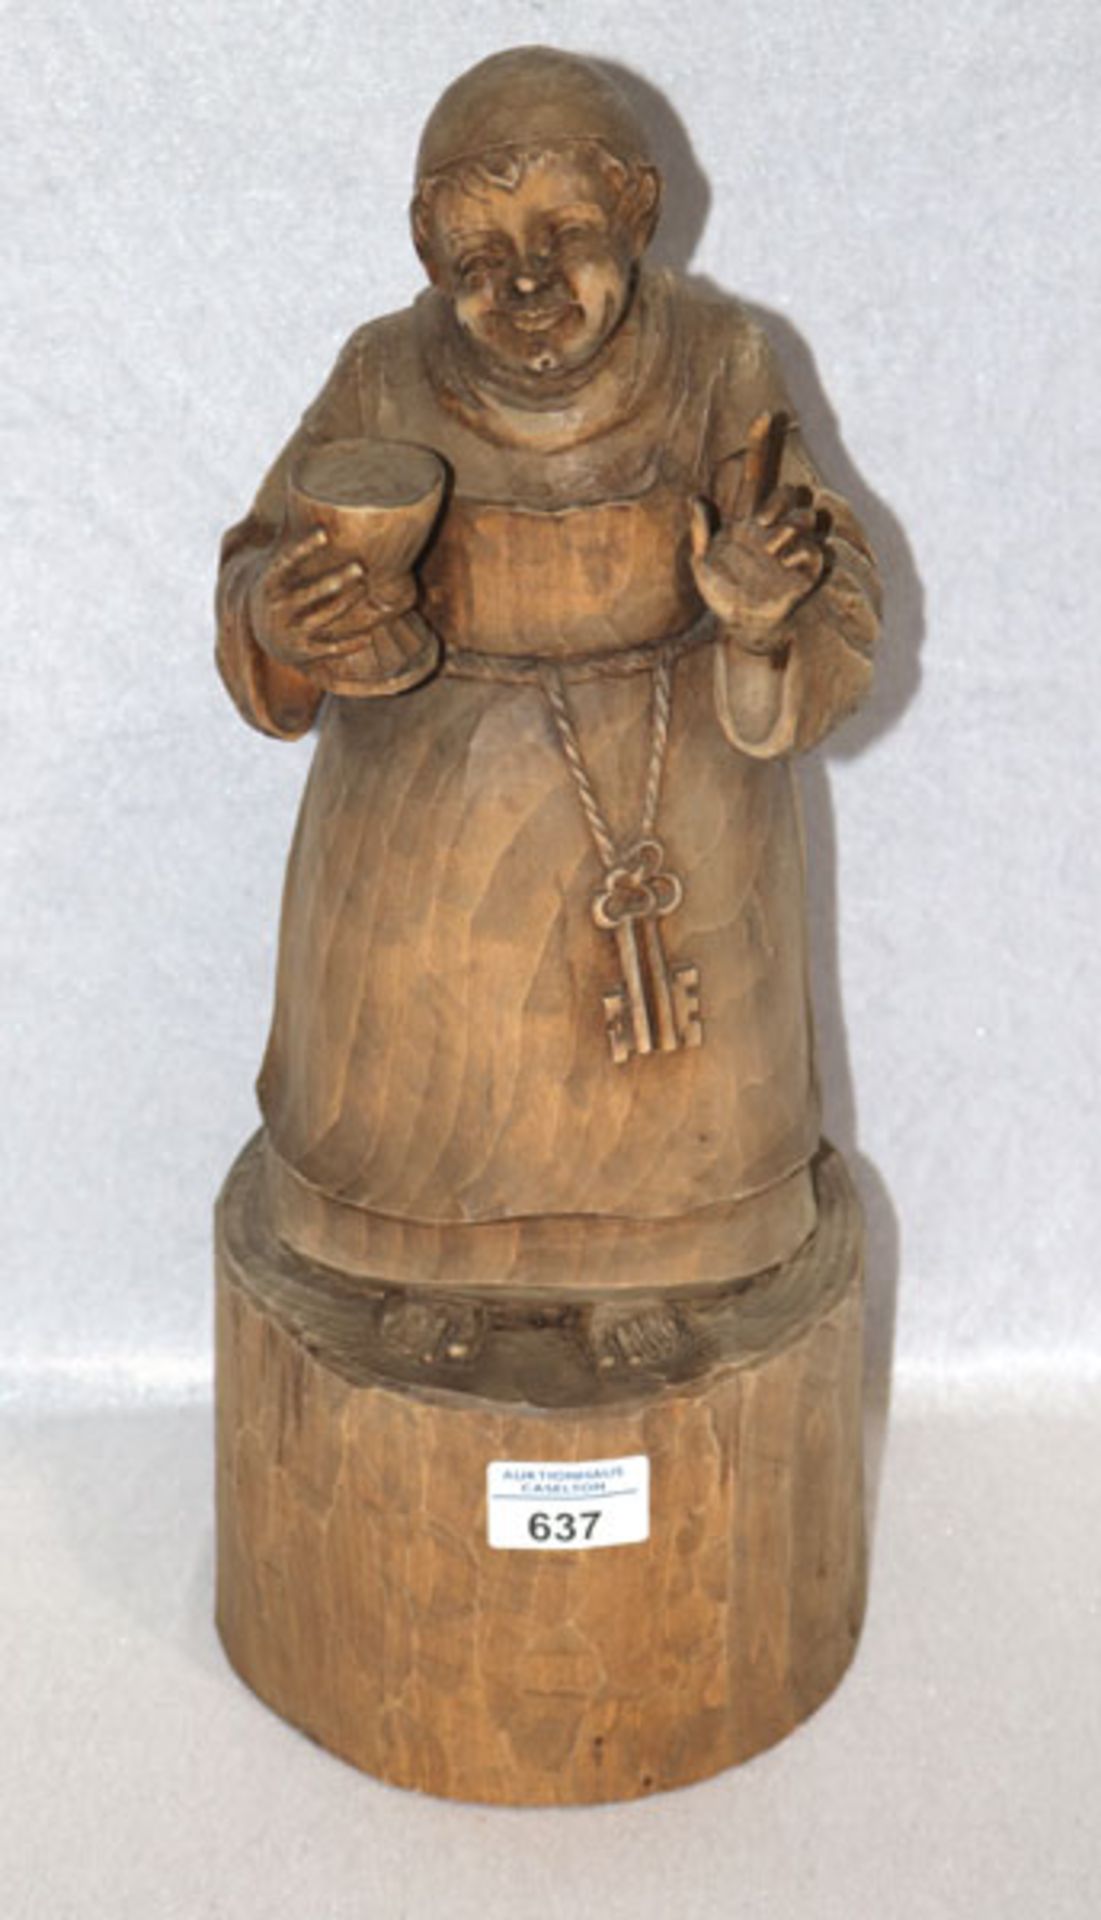 Holz Figurenskulptur 'Mönch mit Weinkelch', dunkel gebeizt, H 42 cm, D ca. 16,5 cm